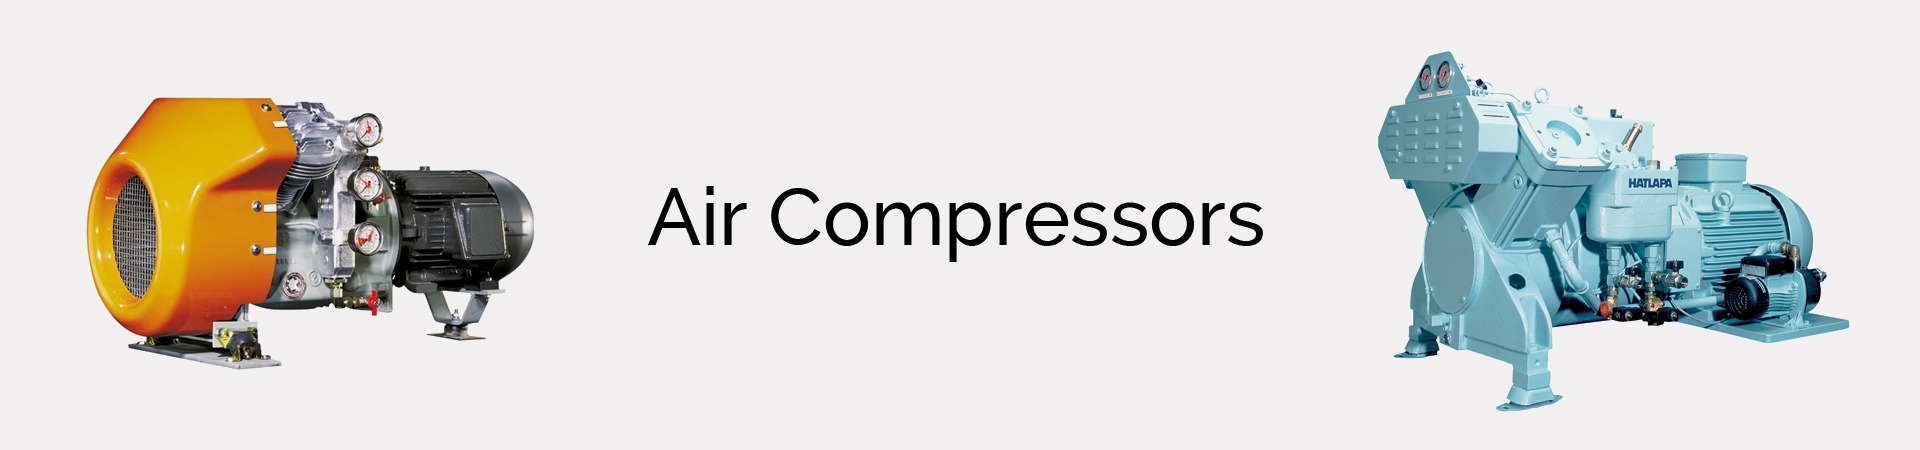 Air-compressors